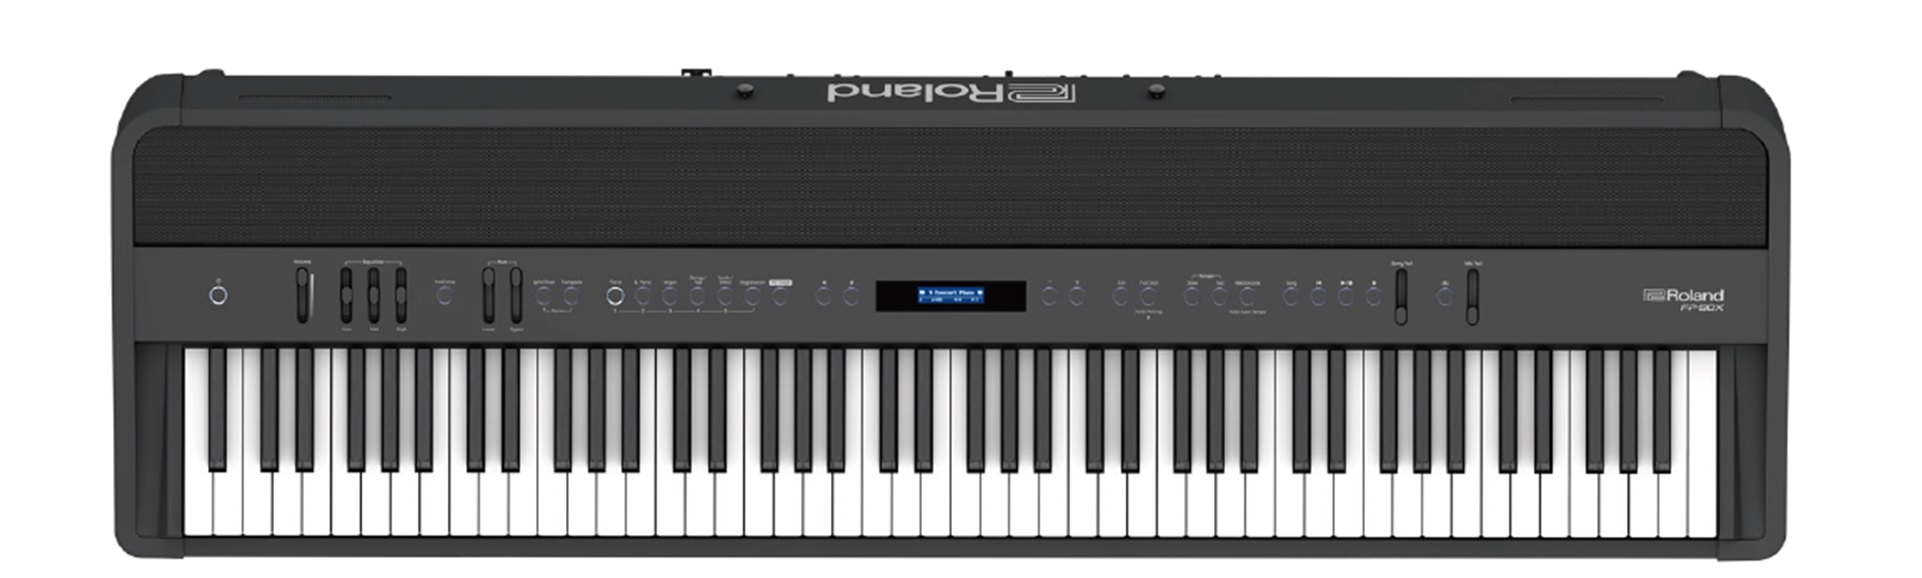 *Roland FP-90X/FP-60X/FP-30X ポータブル・ピアノFPシリーズがグレードアップして新登場 ***FP-90X ***FP-60X ***FP-30X スマートなデザインはそのままに、豊かな響きのピアノ・サウンドをはじめ、最新技術を盛り込みました。]]ホームユースでお使いいた […]